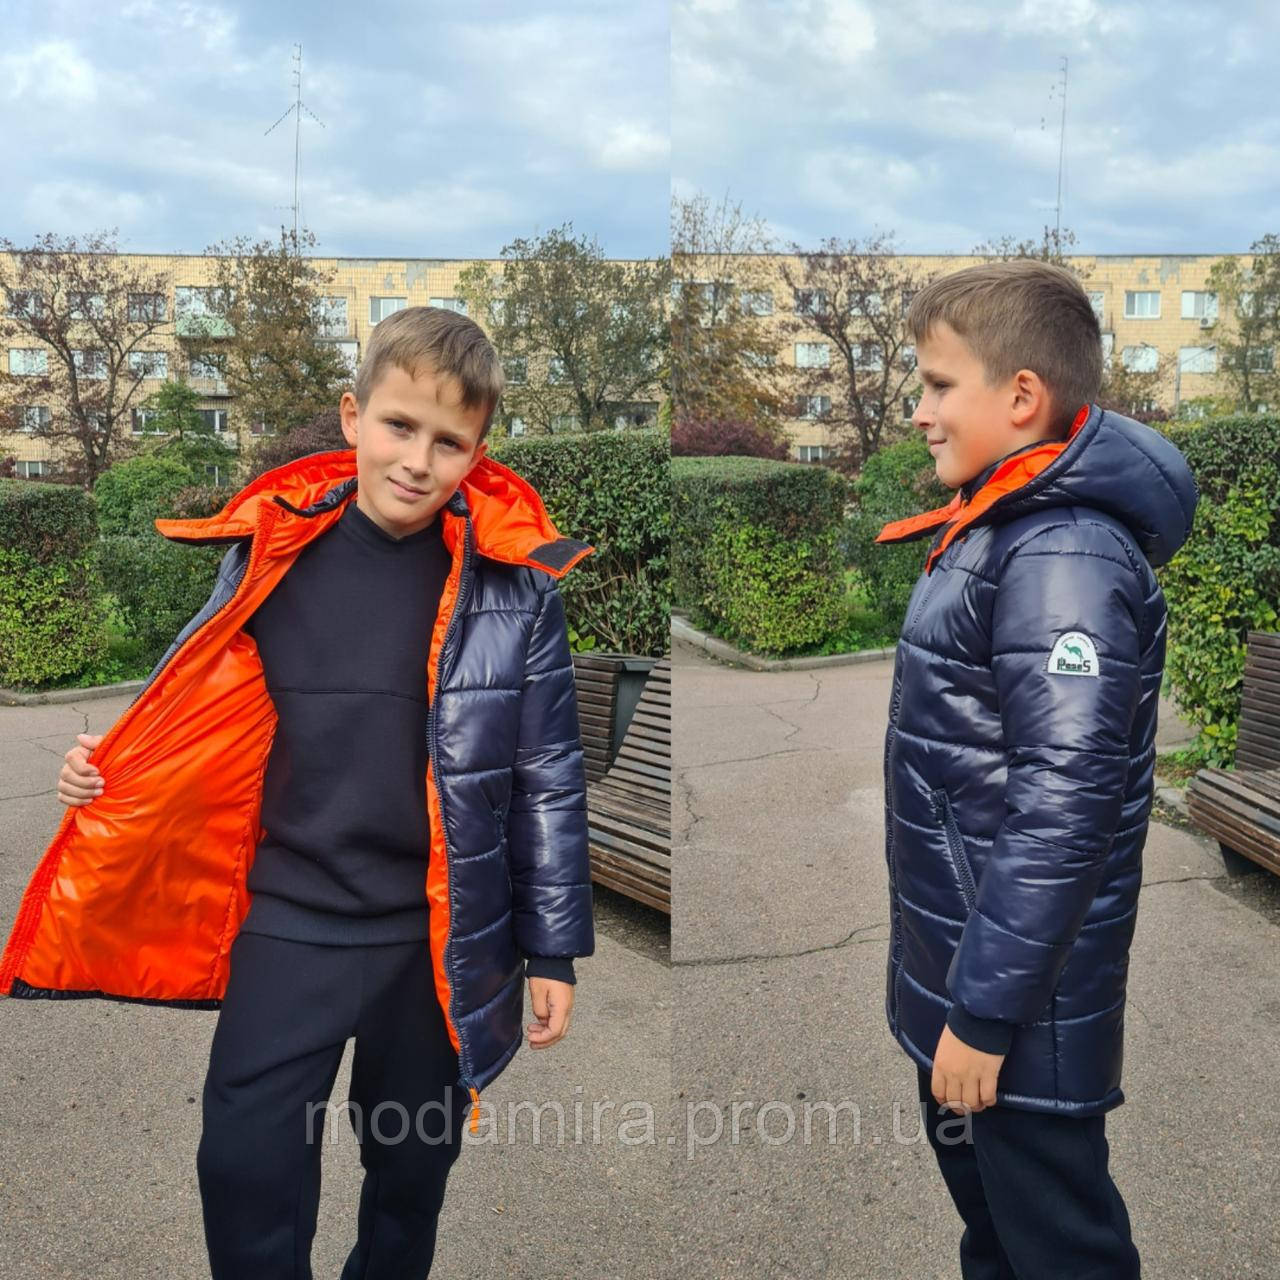 Зимова подовжена куртка-парка на хлопчика підлітка. Дитяча зимова куртка — пуховик 10-13 років